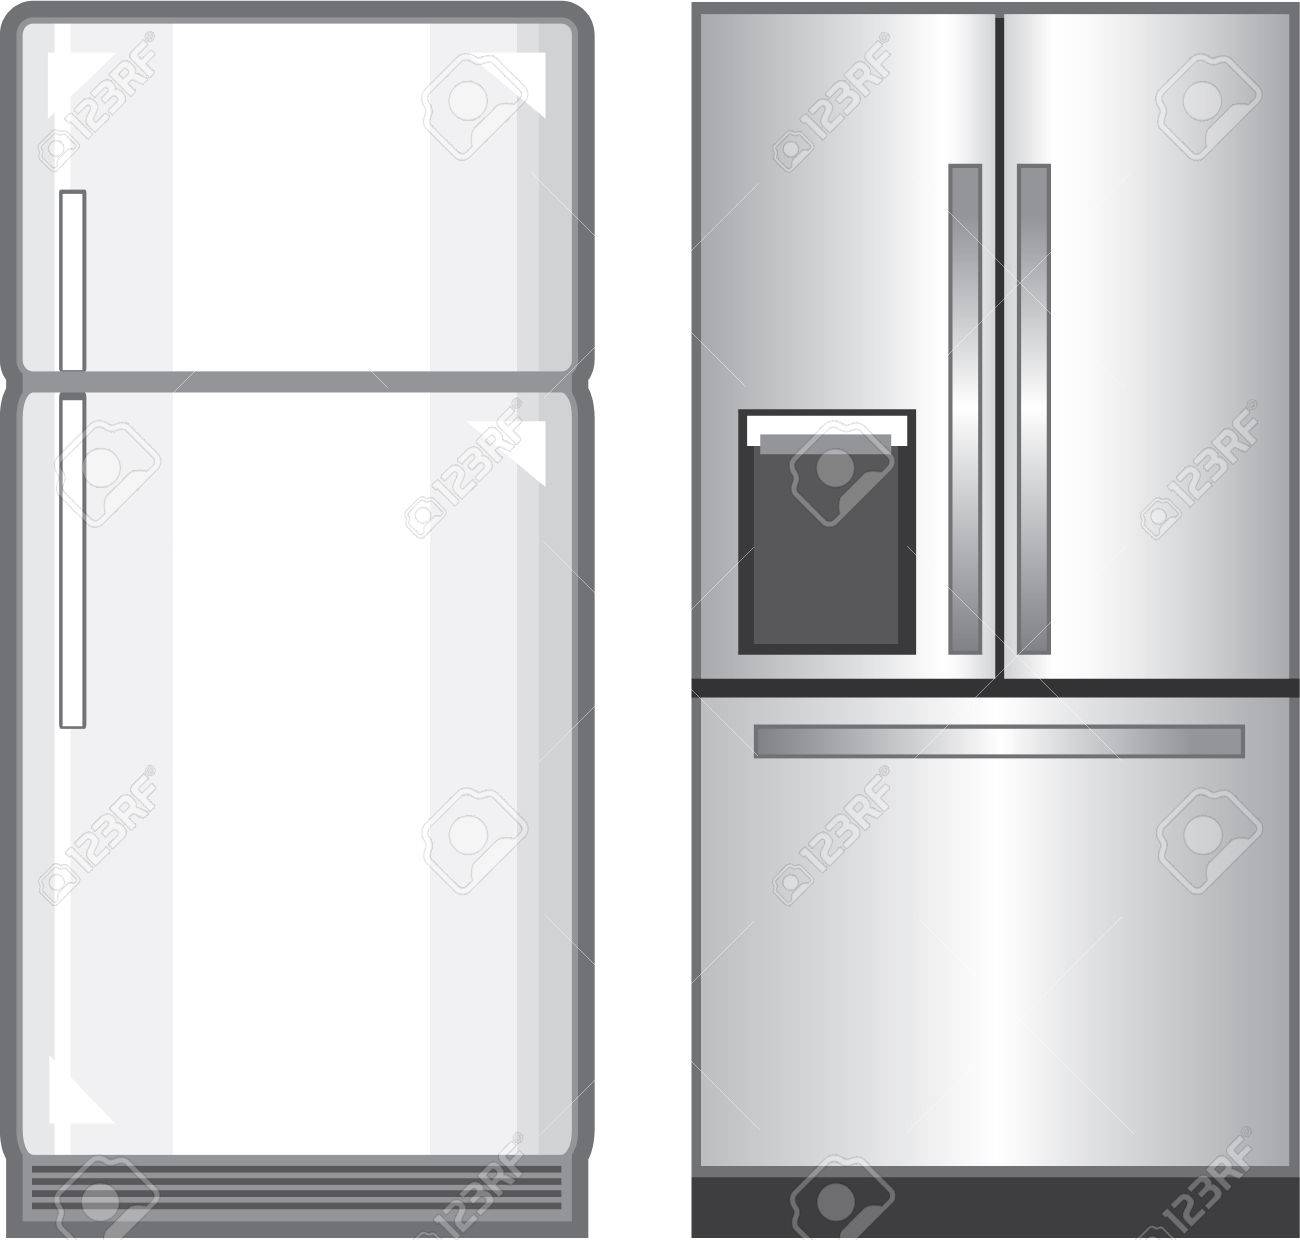 Refrigerator illustration clip-art image vector Stock Vector - 69966275